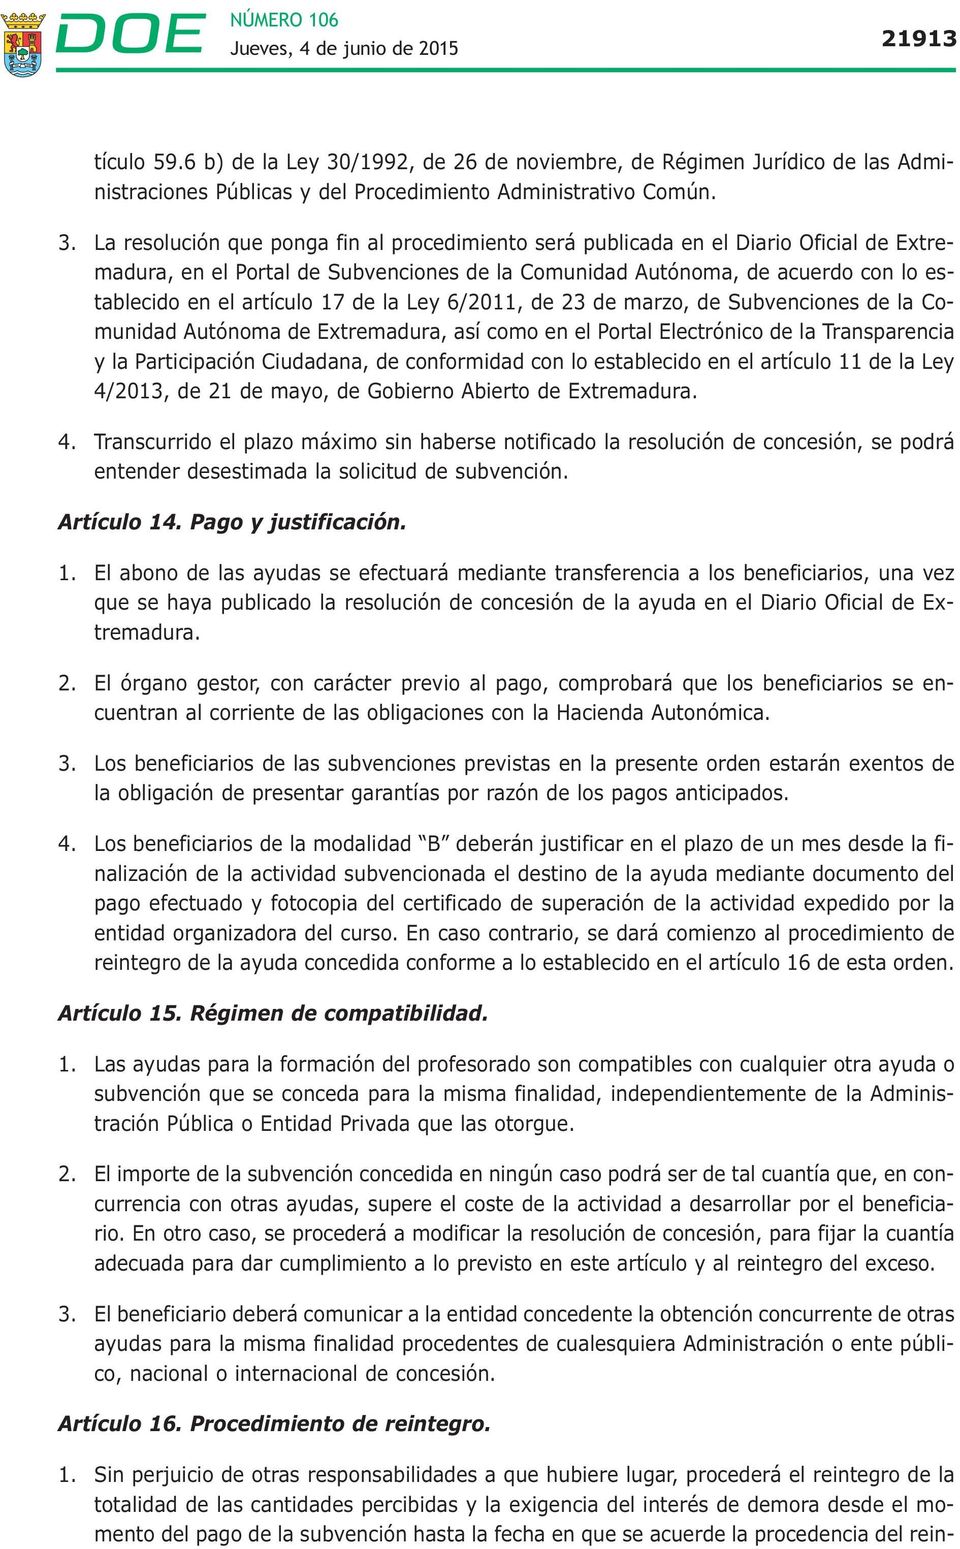 La resolución que ponga fin al procedimiento será publicada en el Diario Oficial de Extremadura, en el Portal de Subvenciones de la Comunidad Autónoma, de acuerdo con lo establecido en el artículo 17